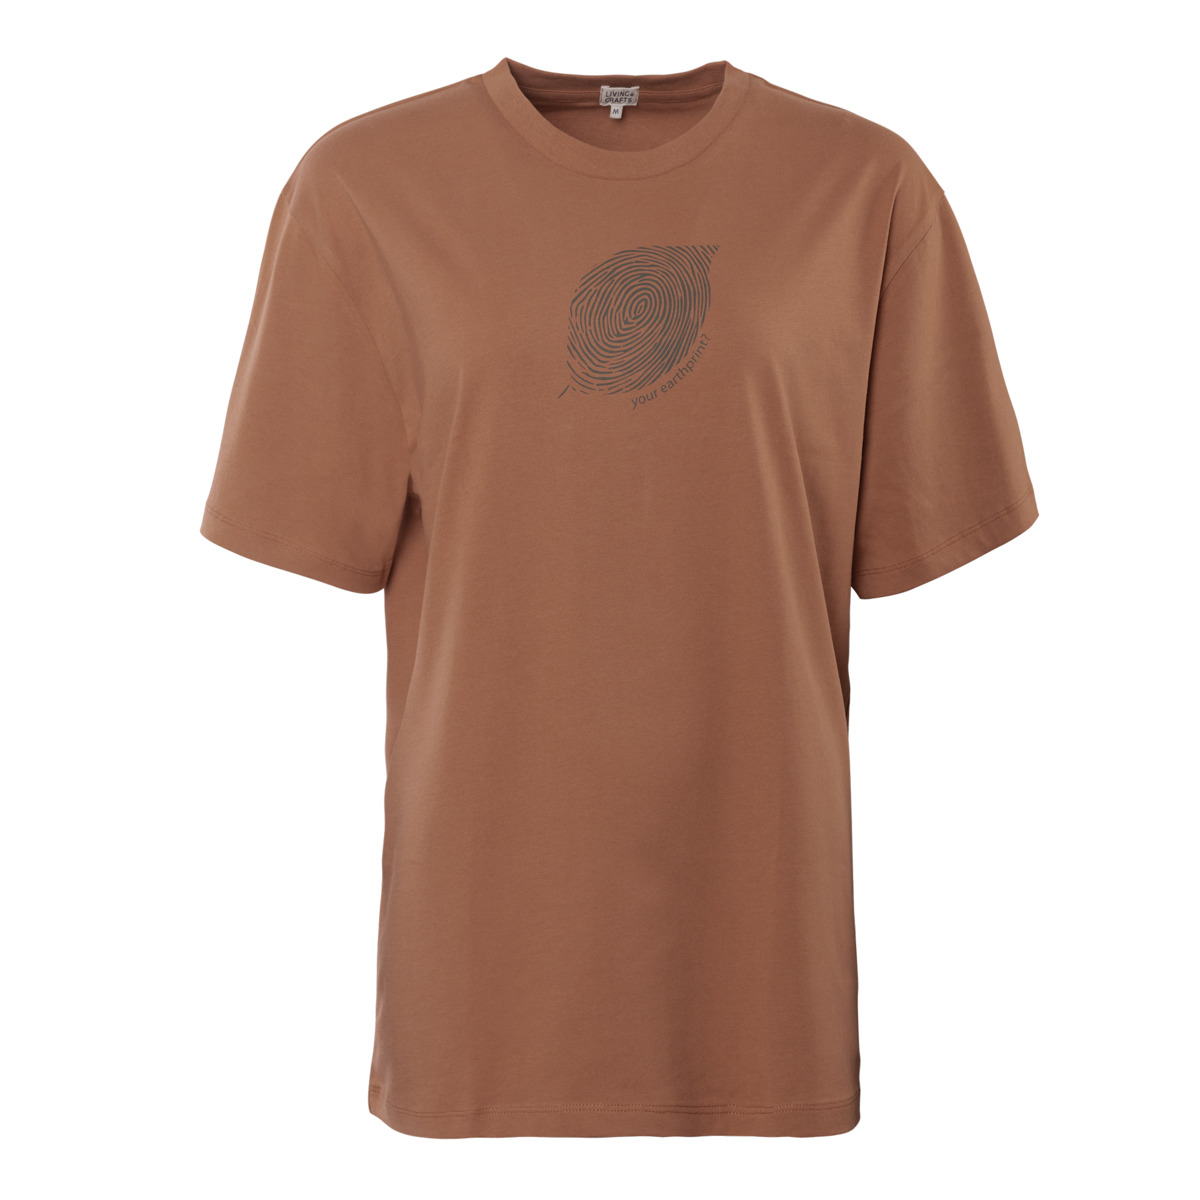 Brown T-shirt, NURIT